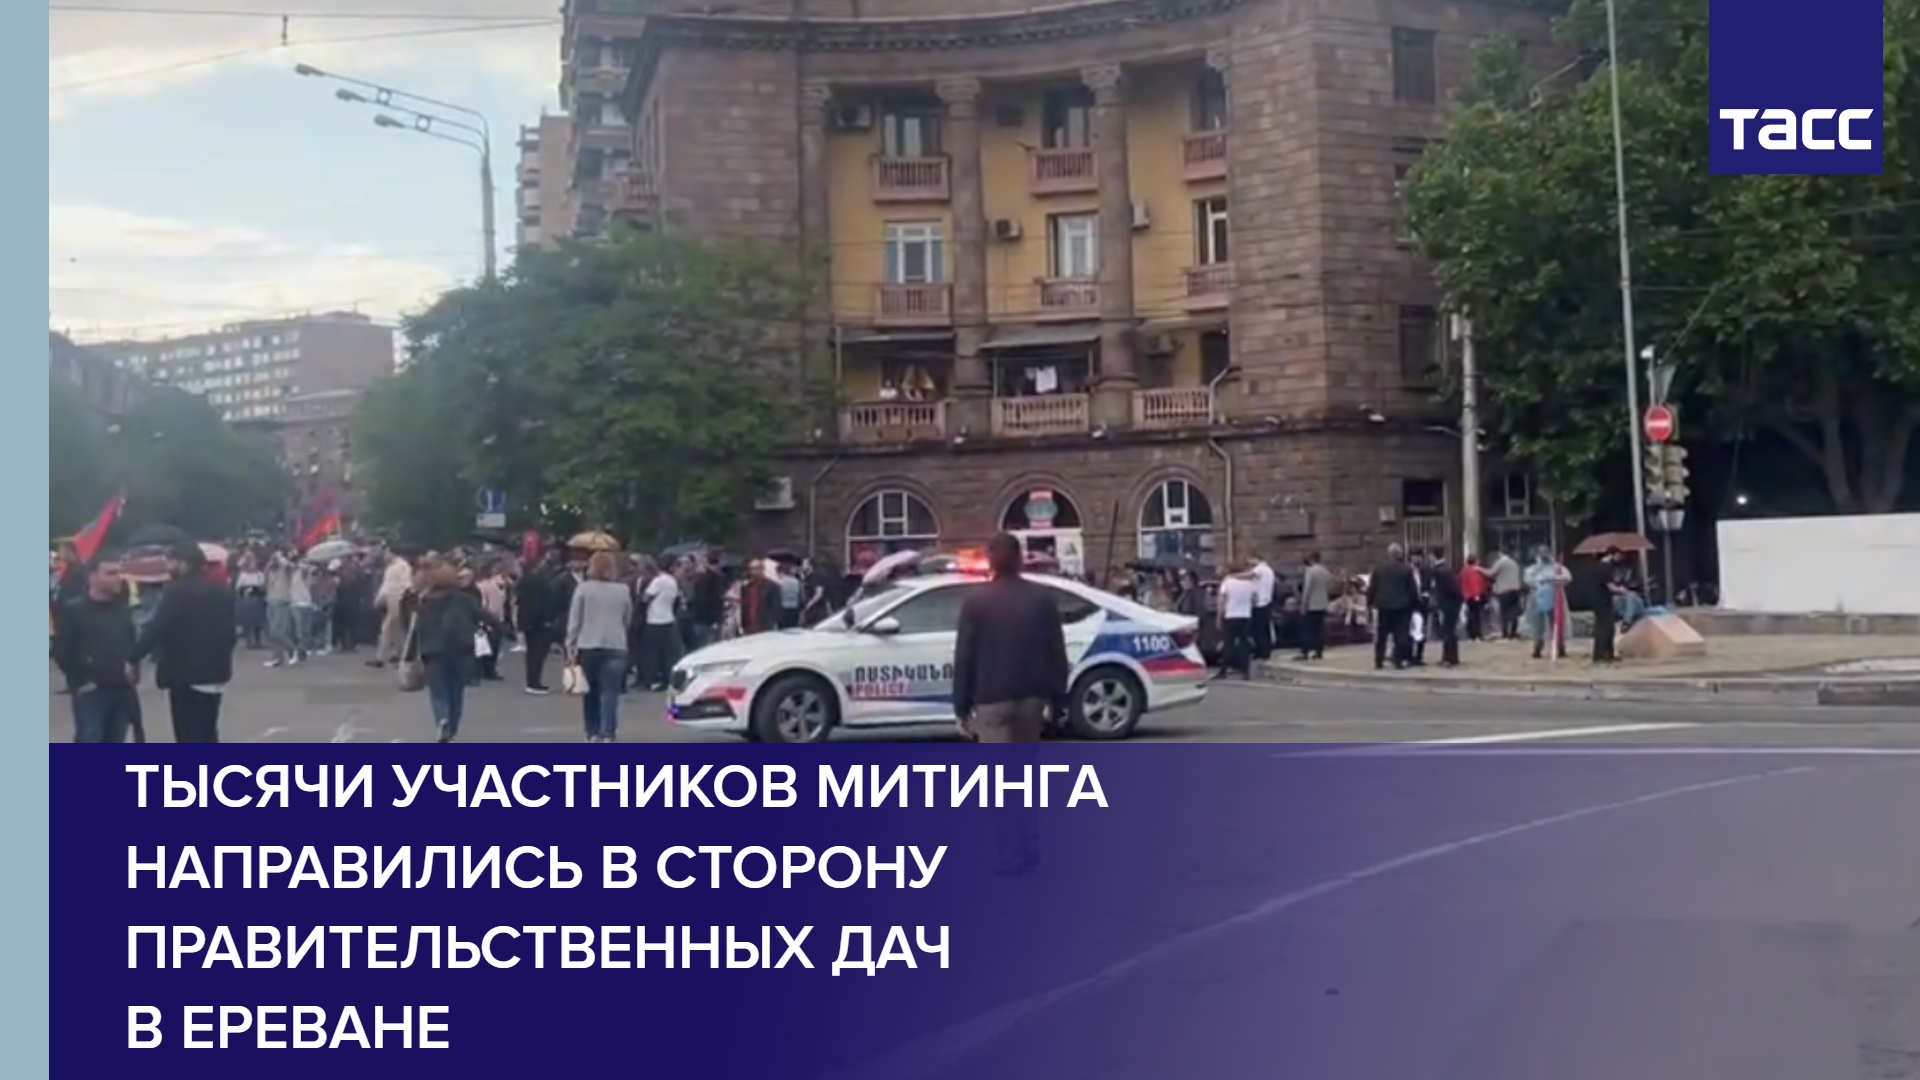 Тысячи участников митинга направились в сторону правительственных дач в Ереване